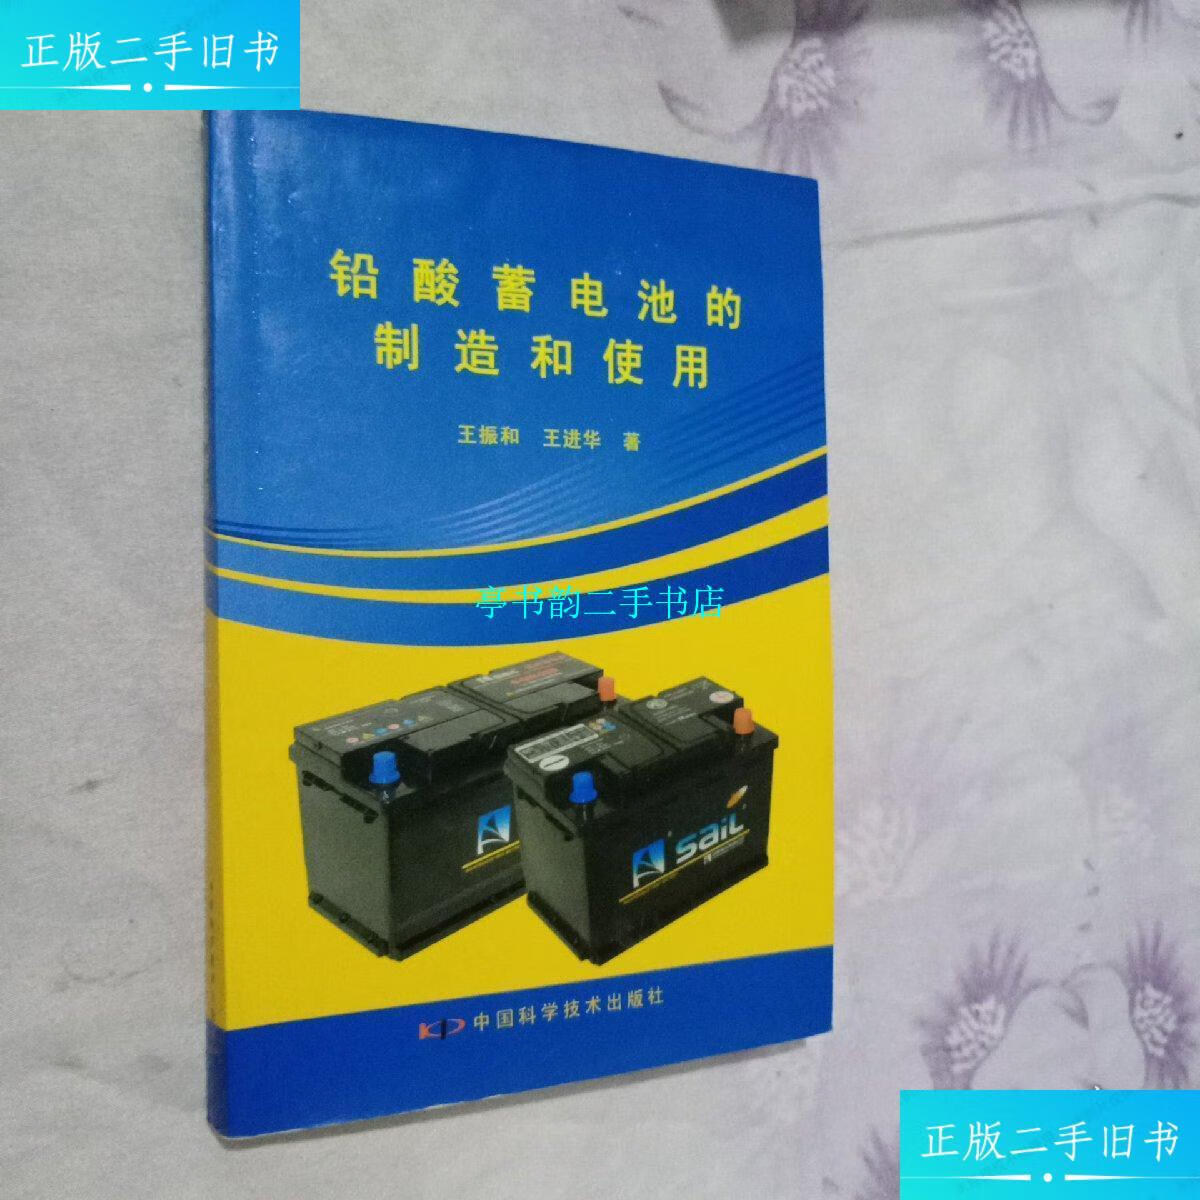 【二手9成新】铅酸蓄电池充的制造和使用 /王振和 中国科学技术出版社